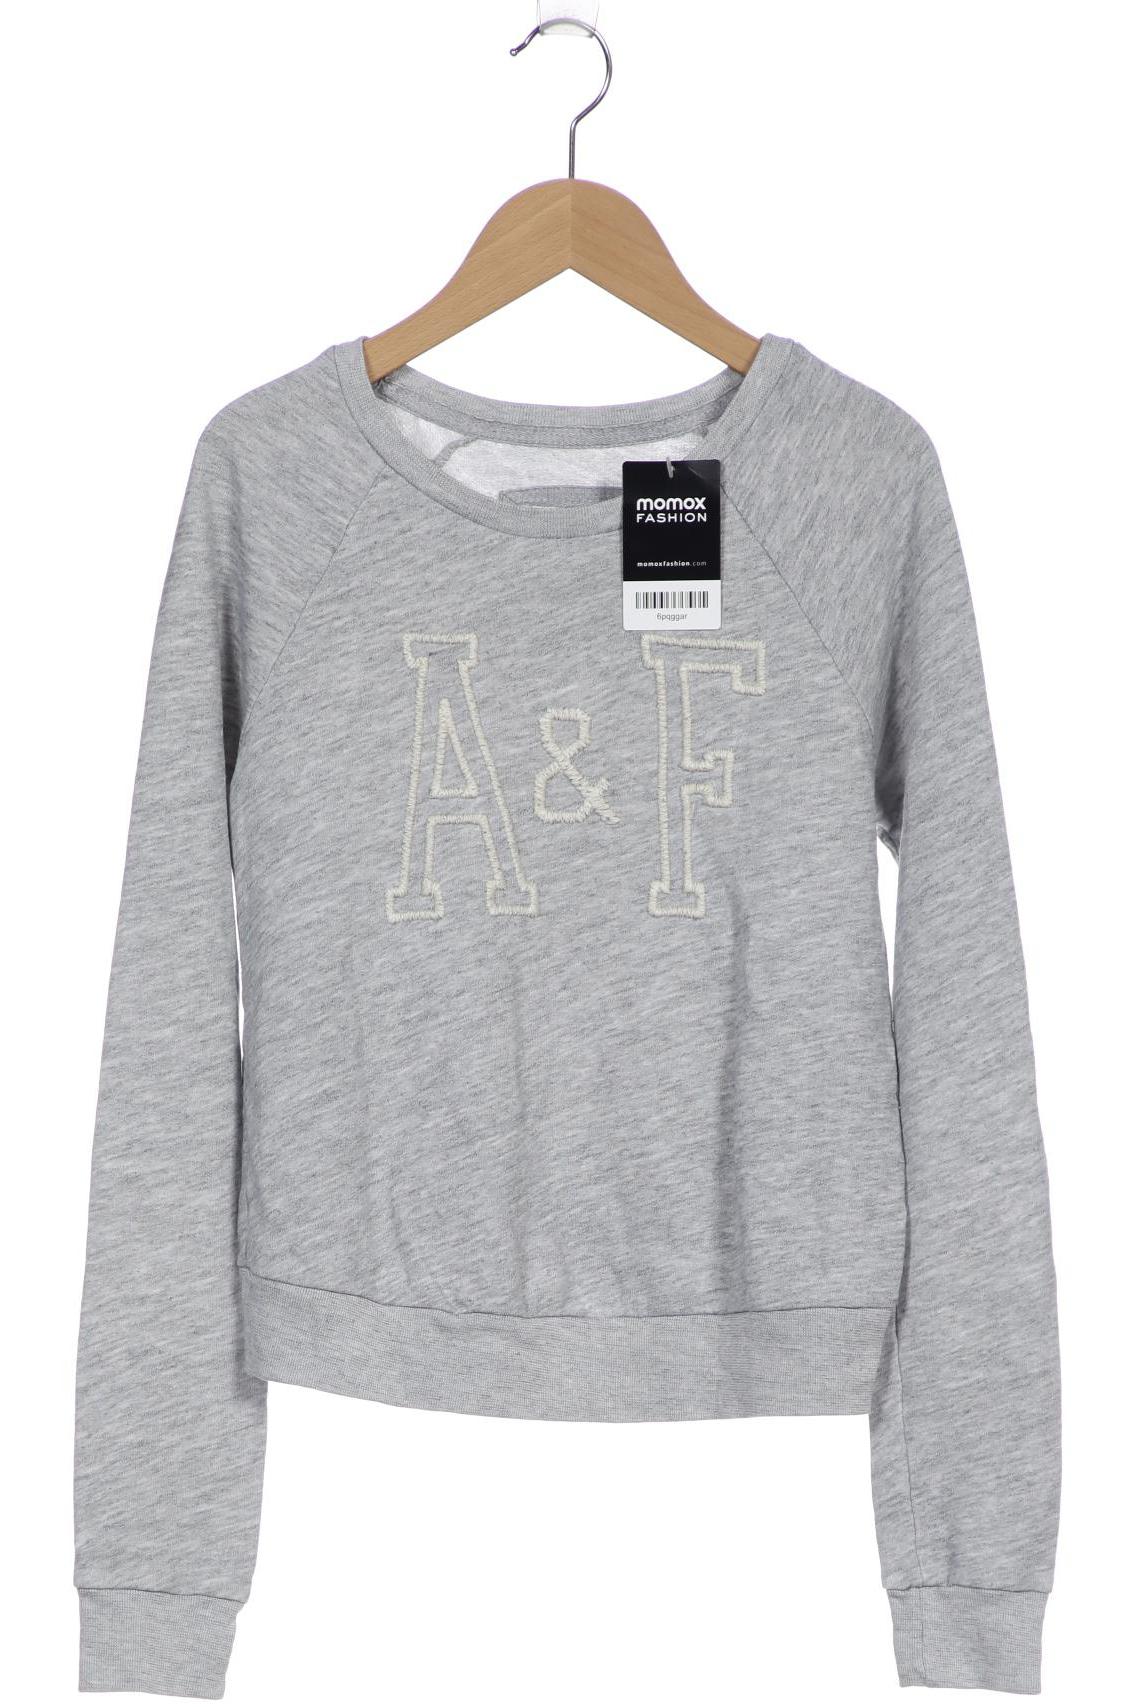 Abercrombie & Fitch Damen Sweatshirt, grau von Abercrombie & Fitch